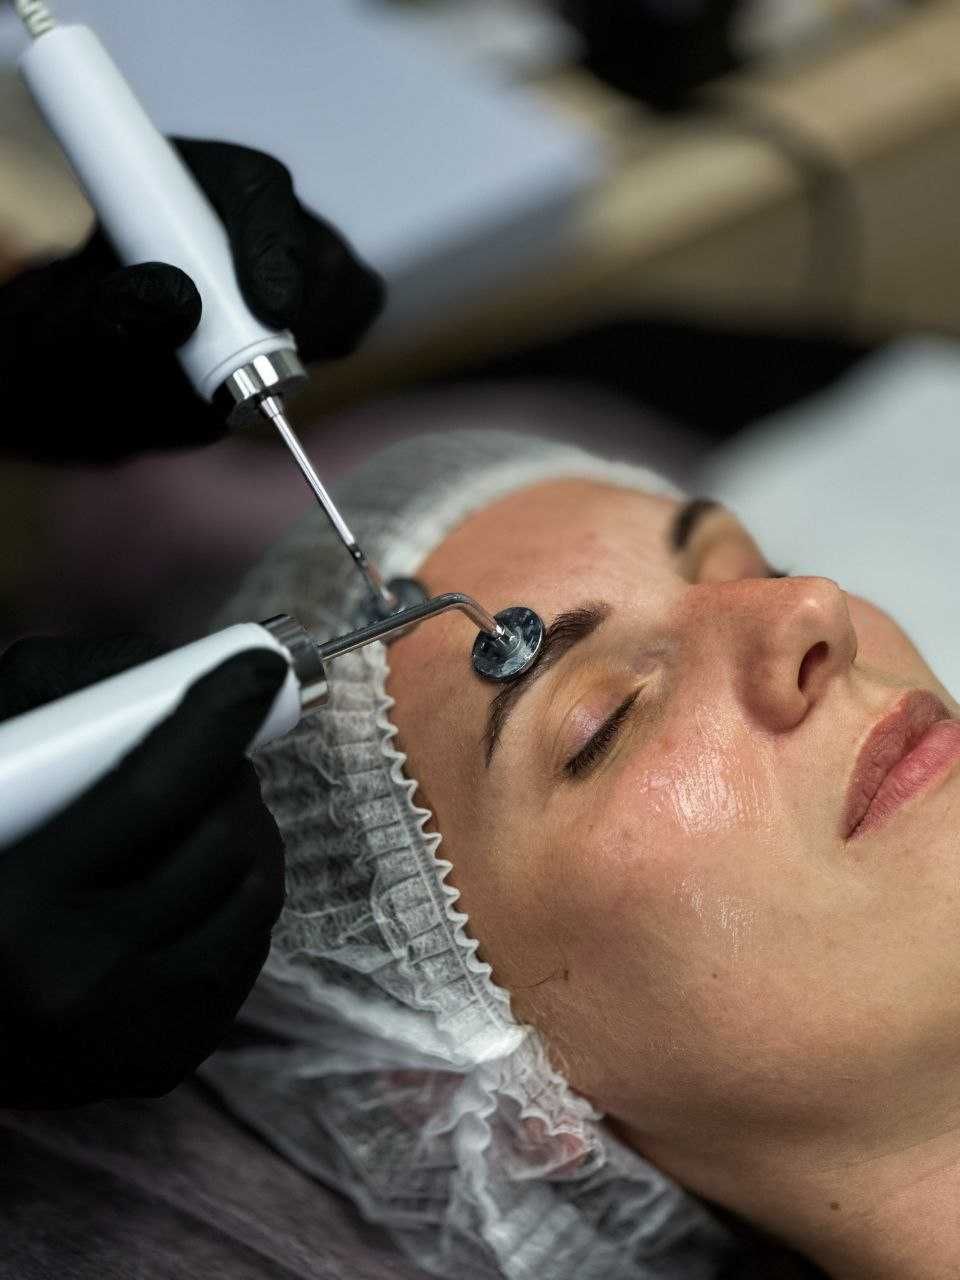 Апарат  мікротоки Beauty Service для мікрострумової терапії
Косметолог